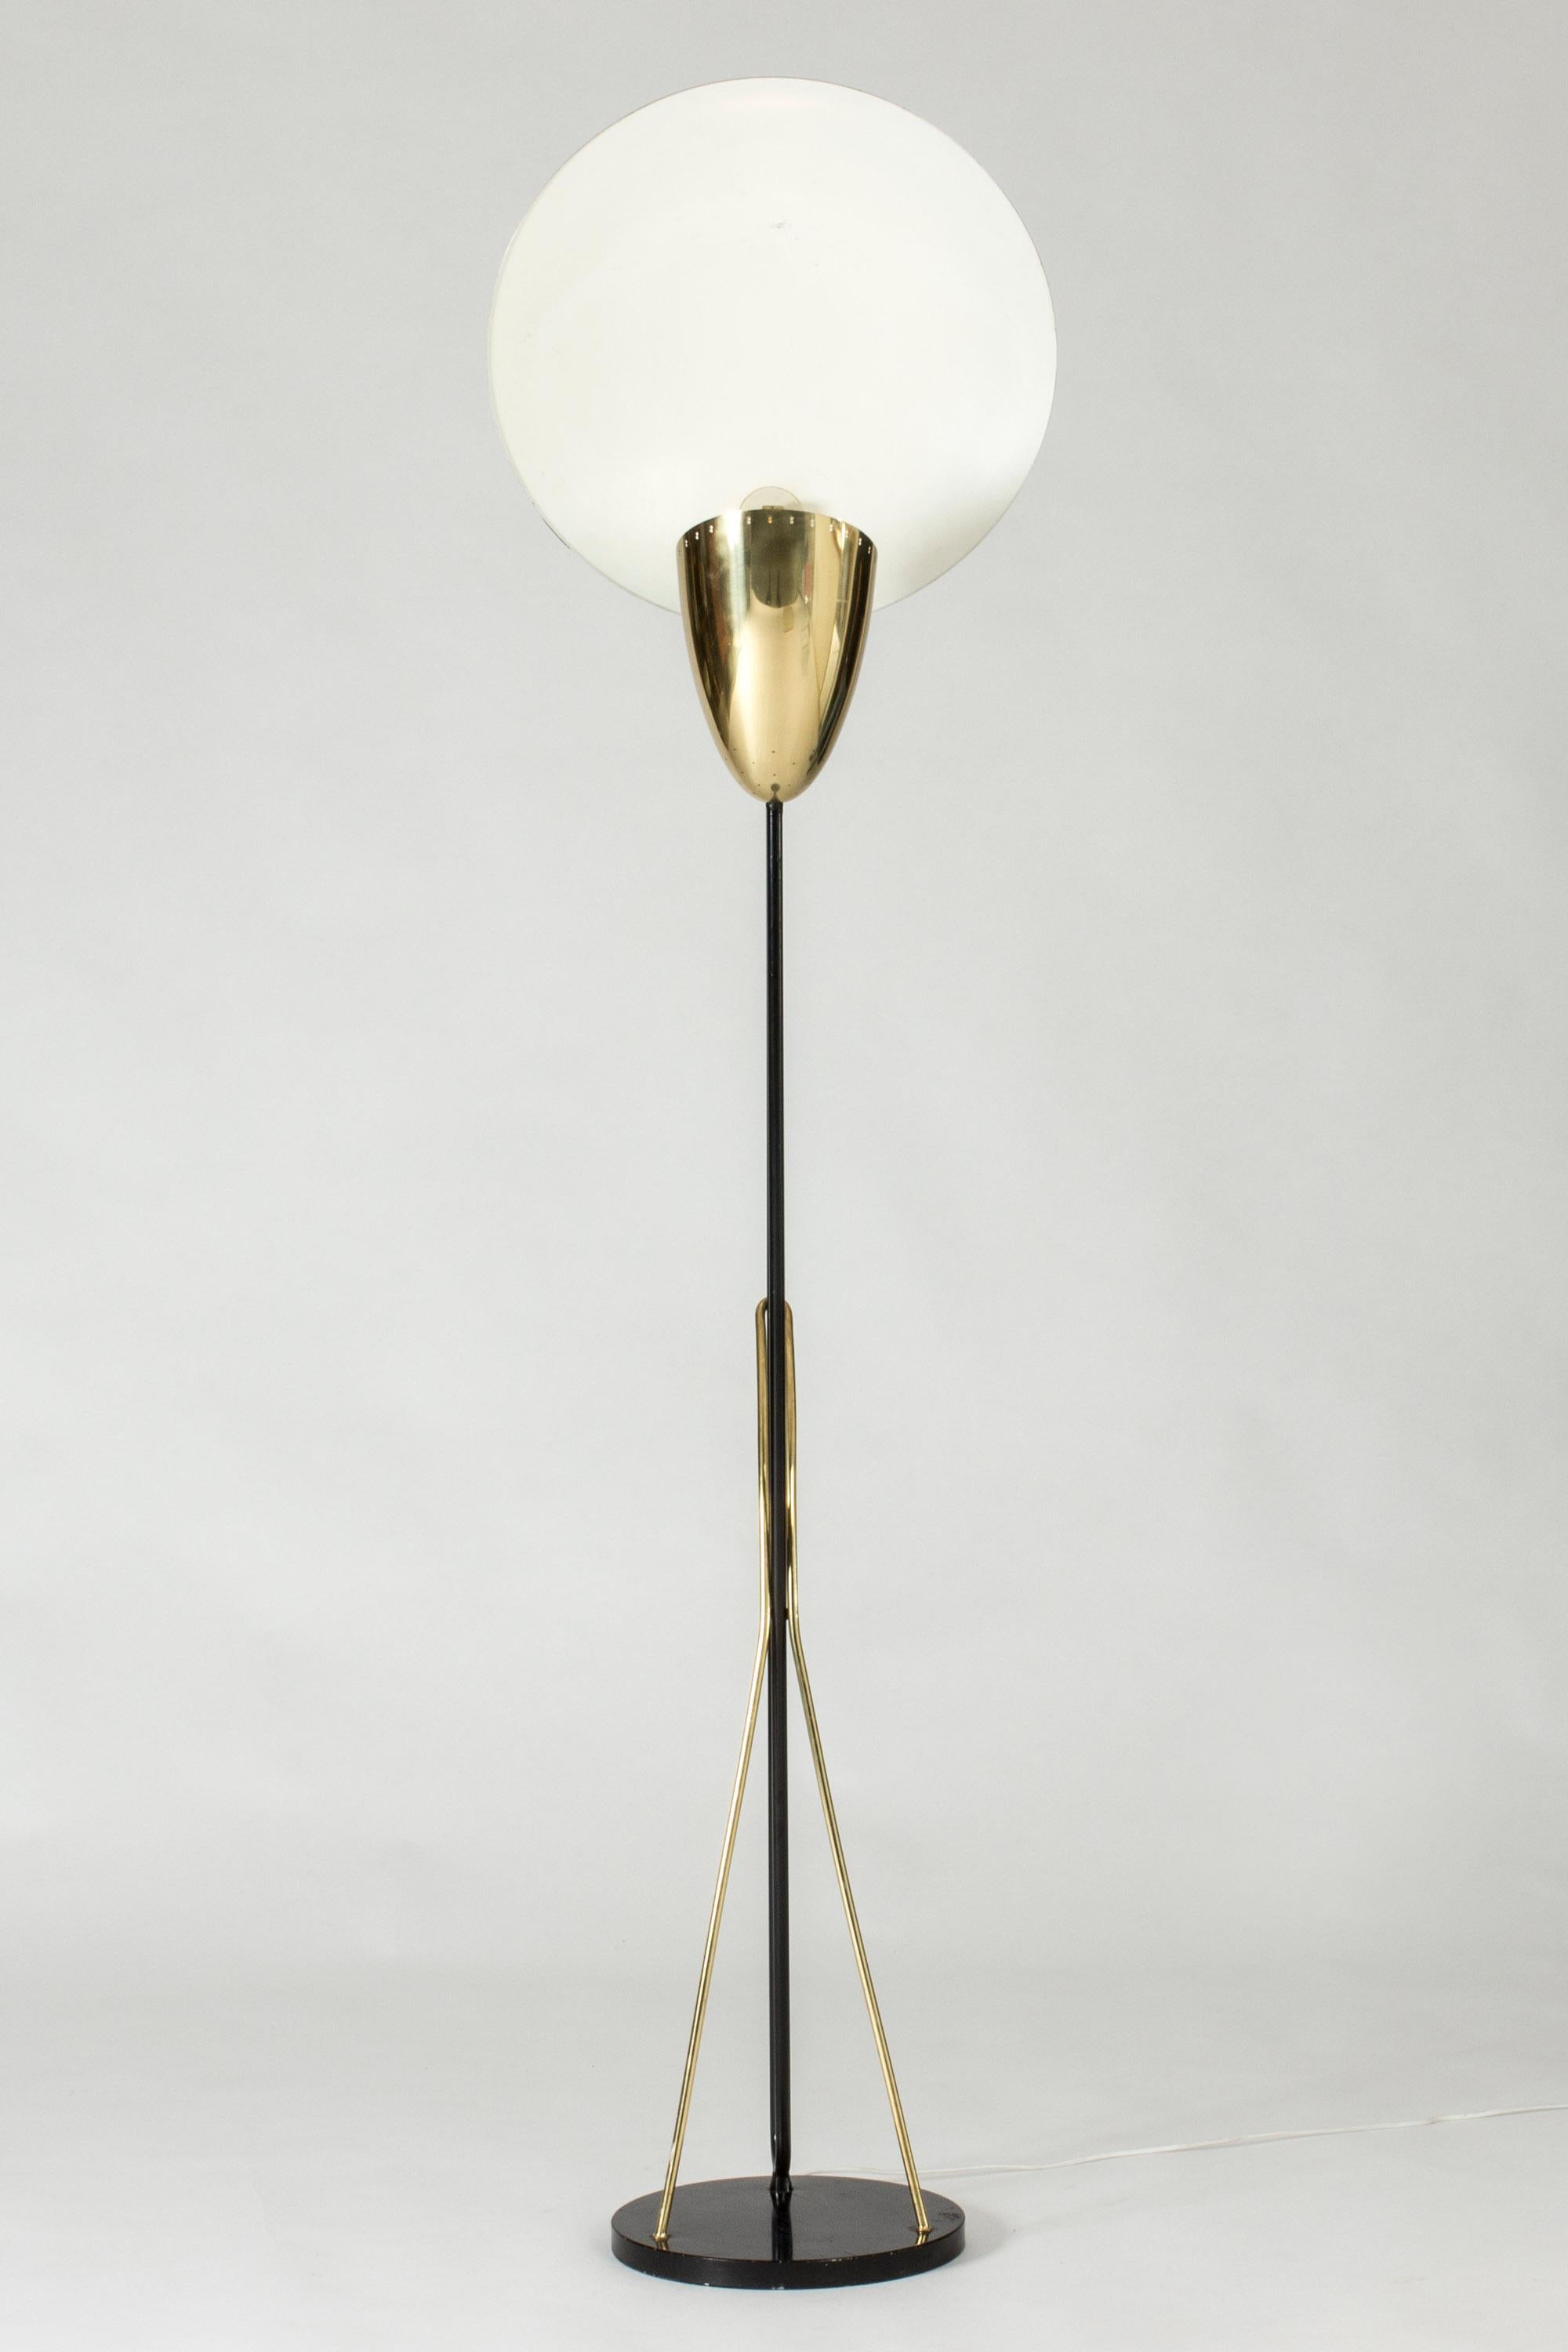 Superbe lampadaire de Svend Aage Holm Sørensen, fabriqué en métal laqué noir avec de beaux détails en laiton. Le grand disque protège l'éclairage vers le haut et peut être tourné selon différents angles.